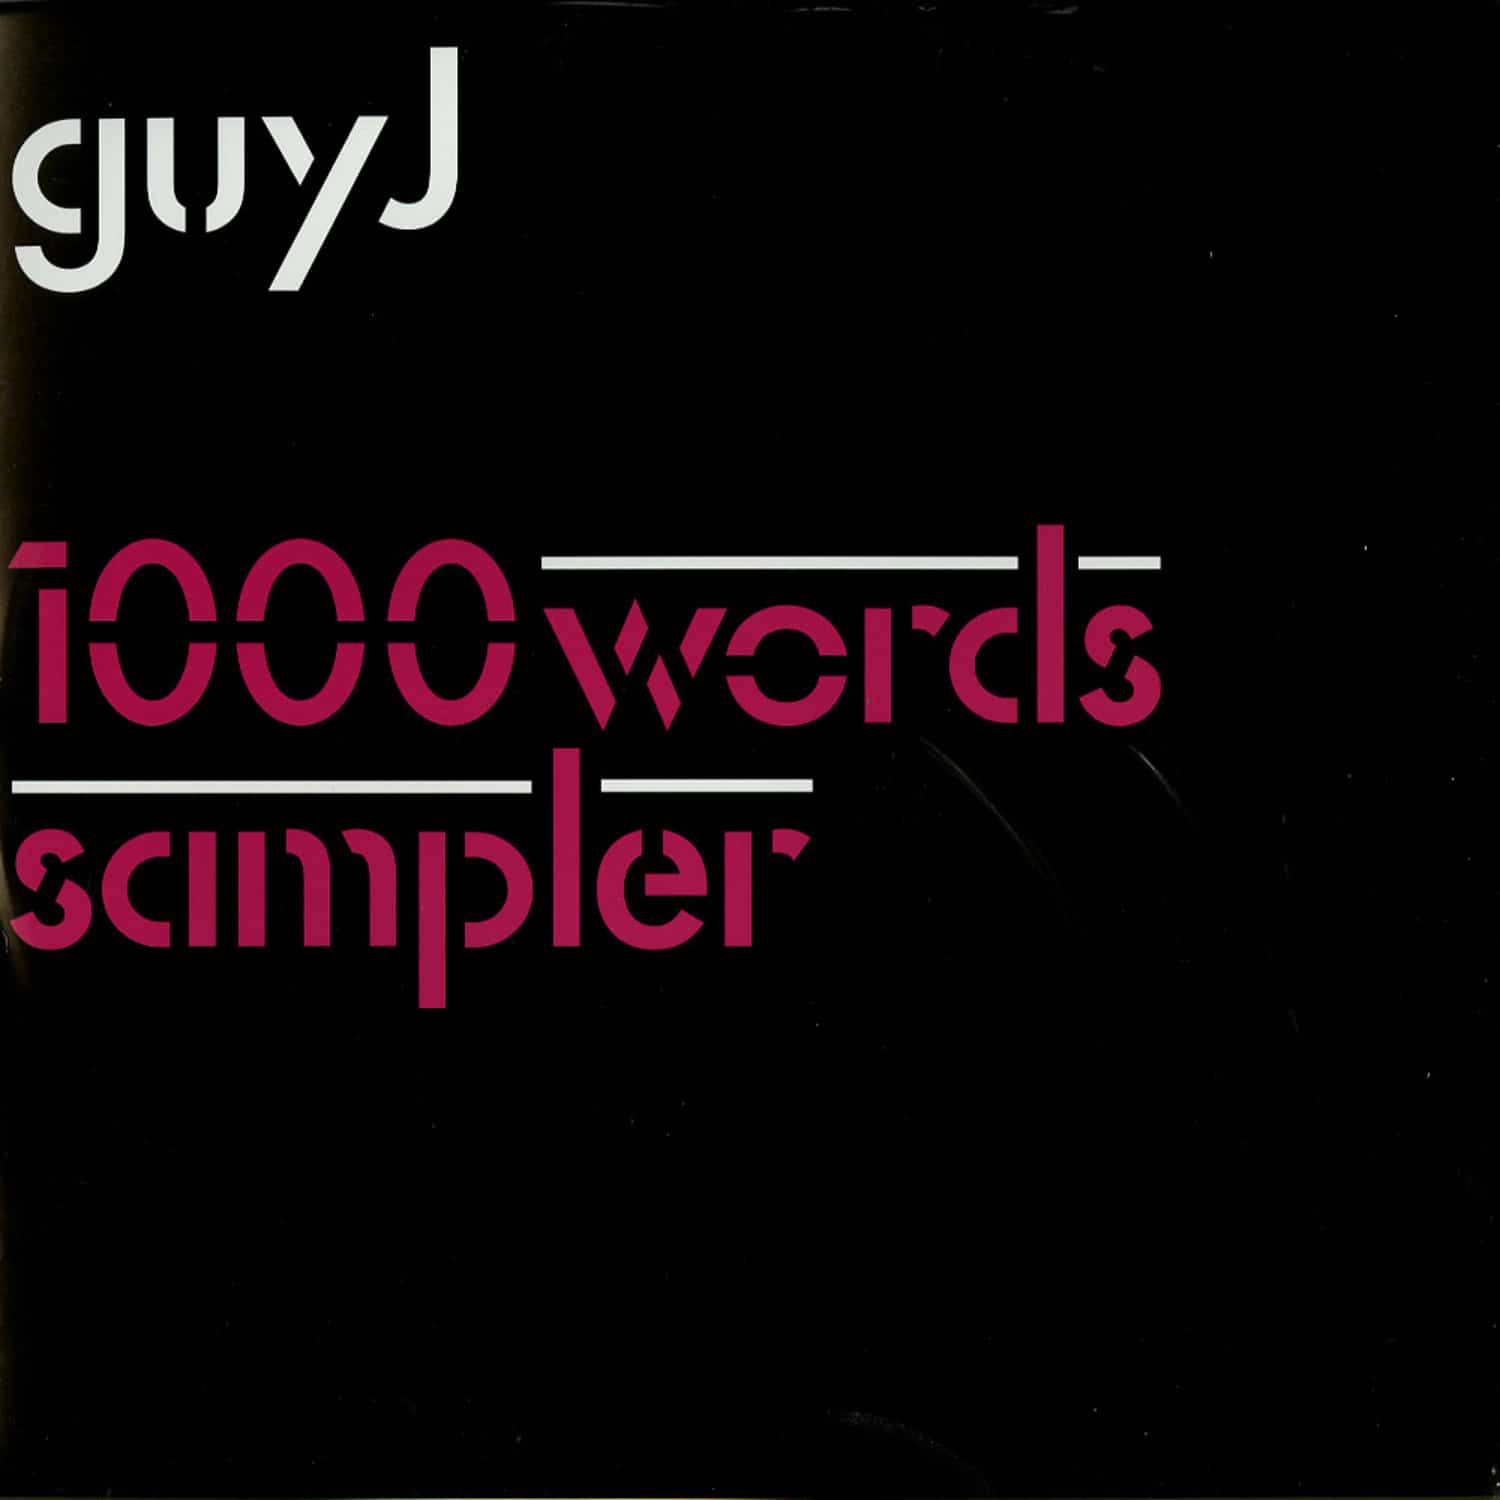 Guy J - 1000 WORDS SAMPLER